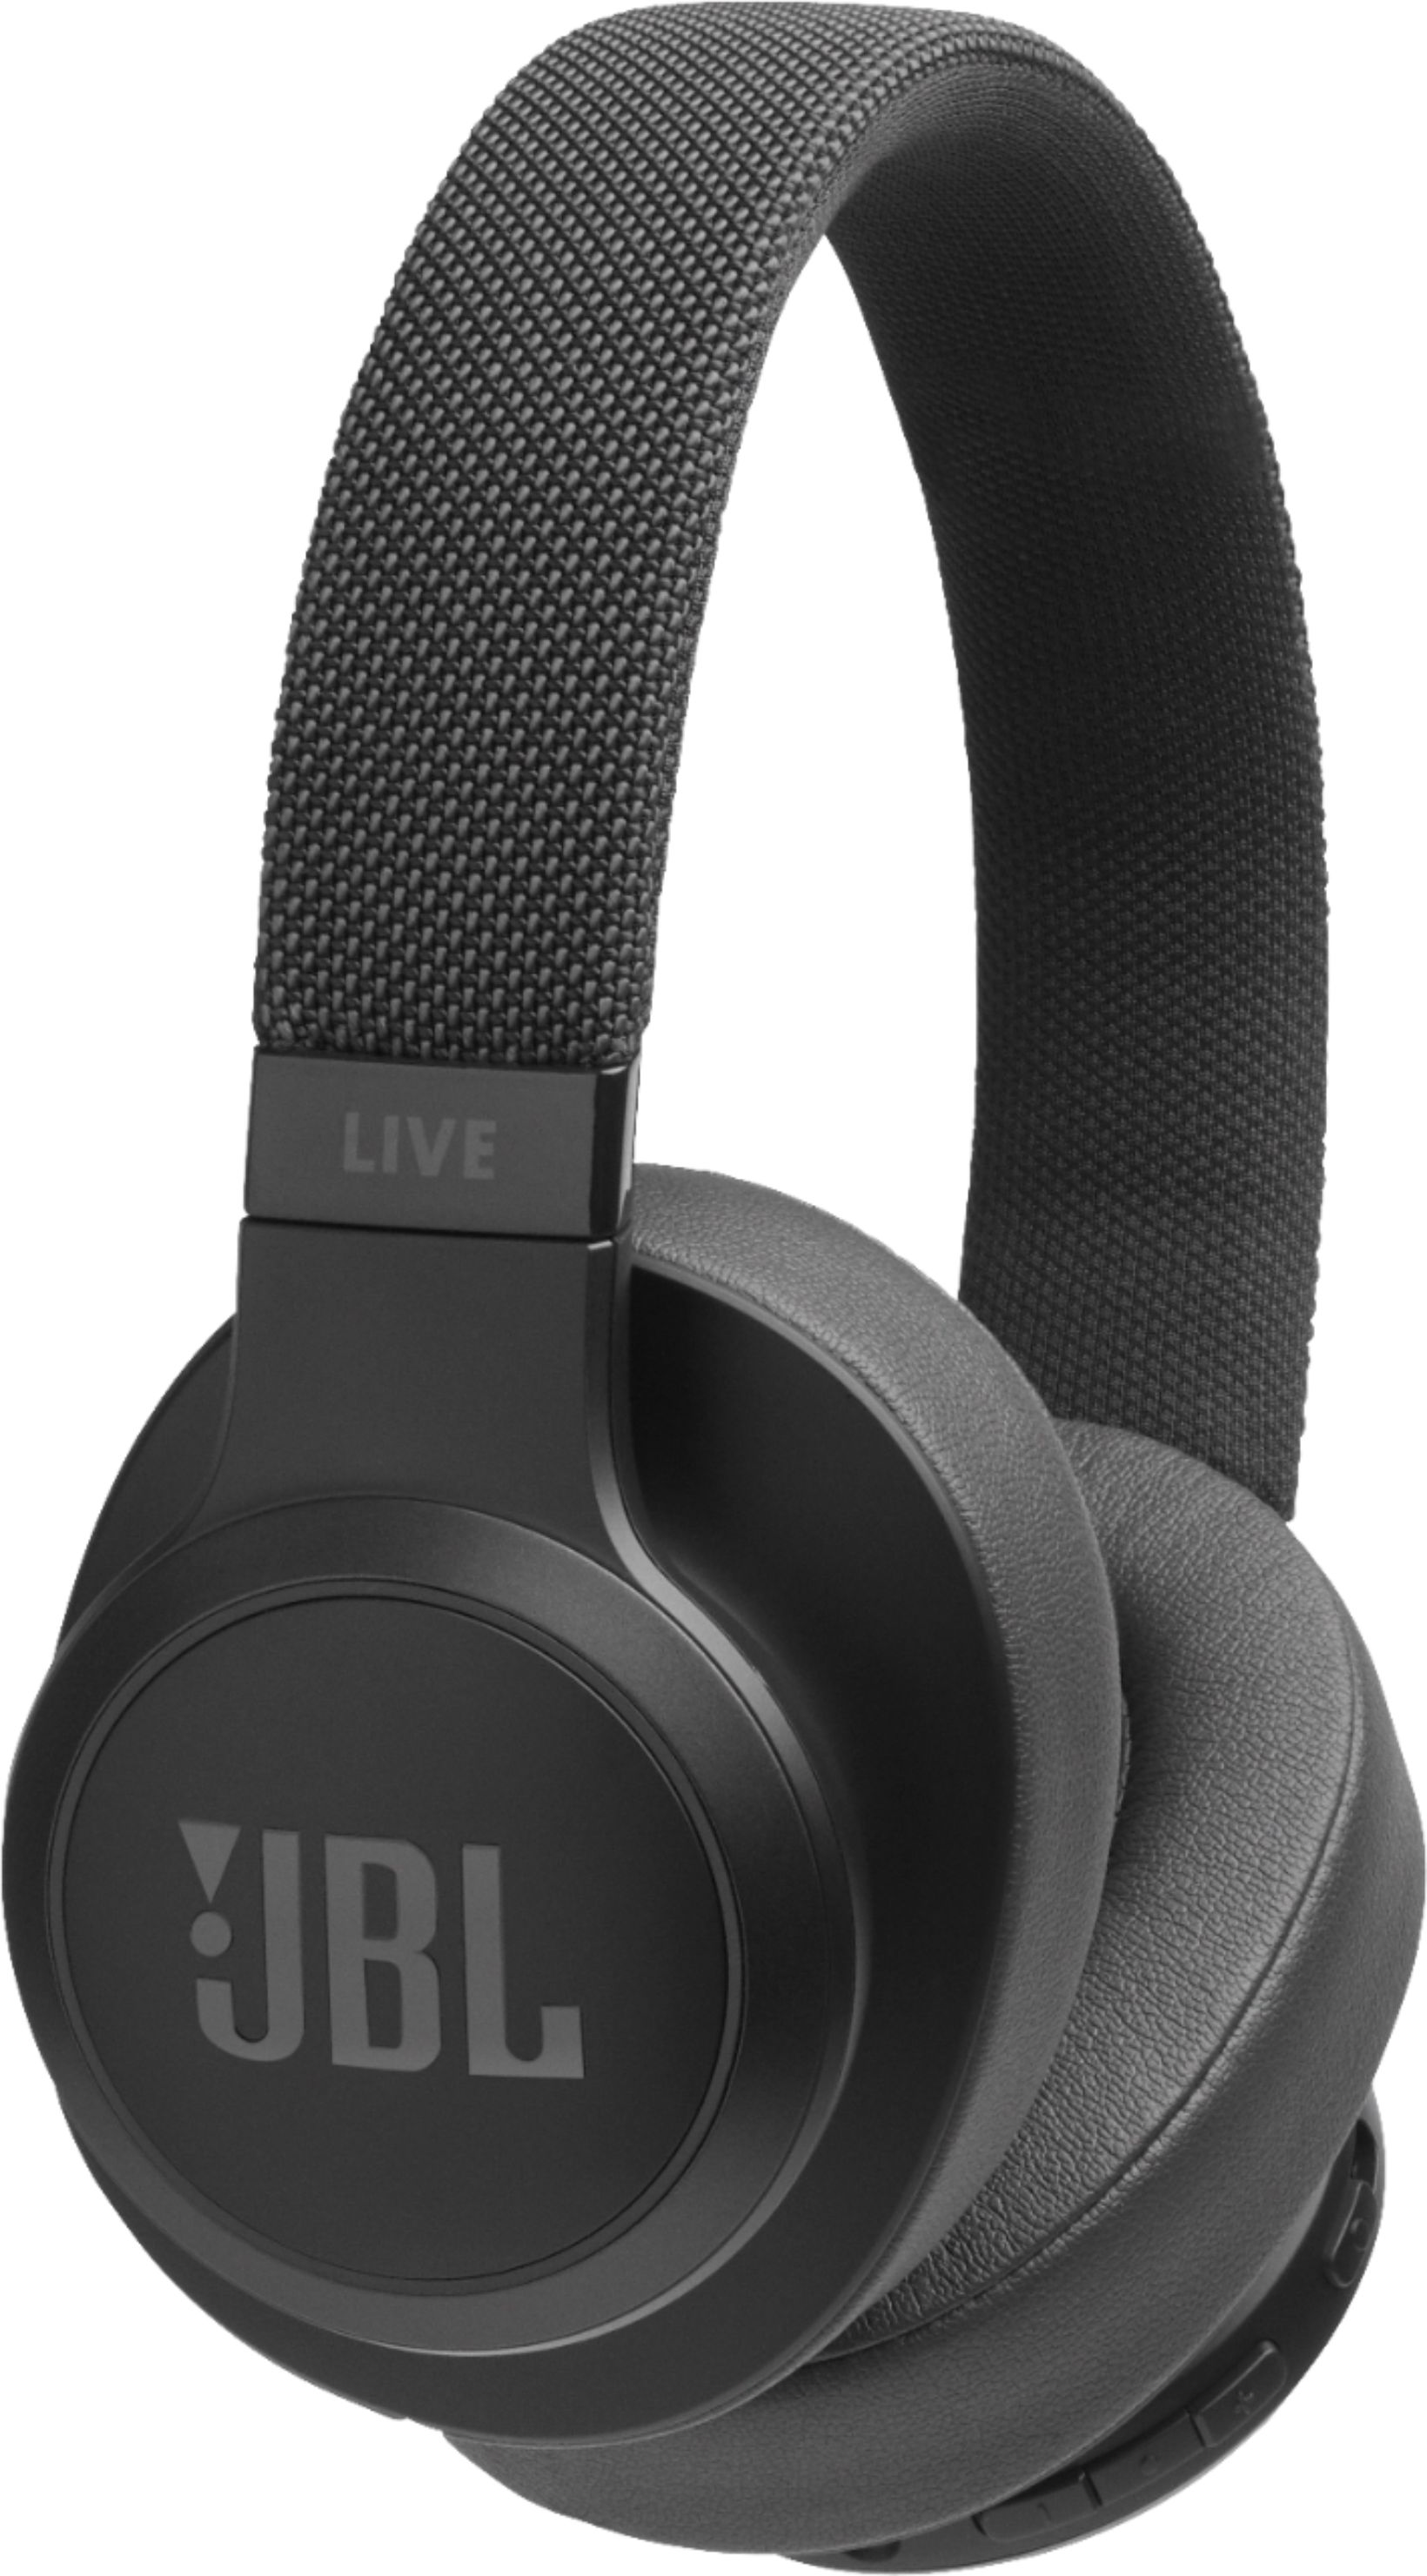 JBL 500BT Over-the-Ear Headphones Black JBLLIVE500BTBLKAM - Best